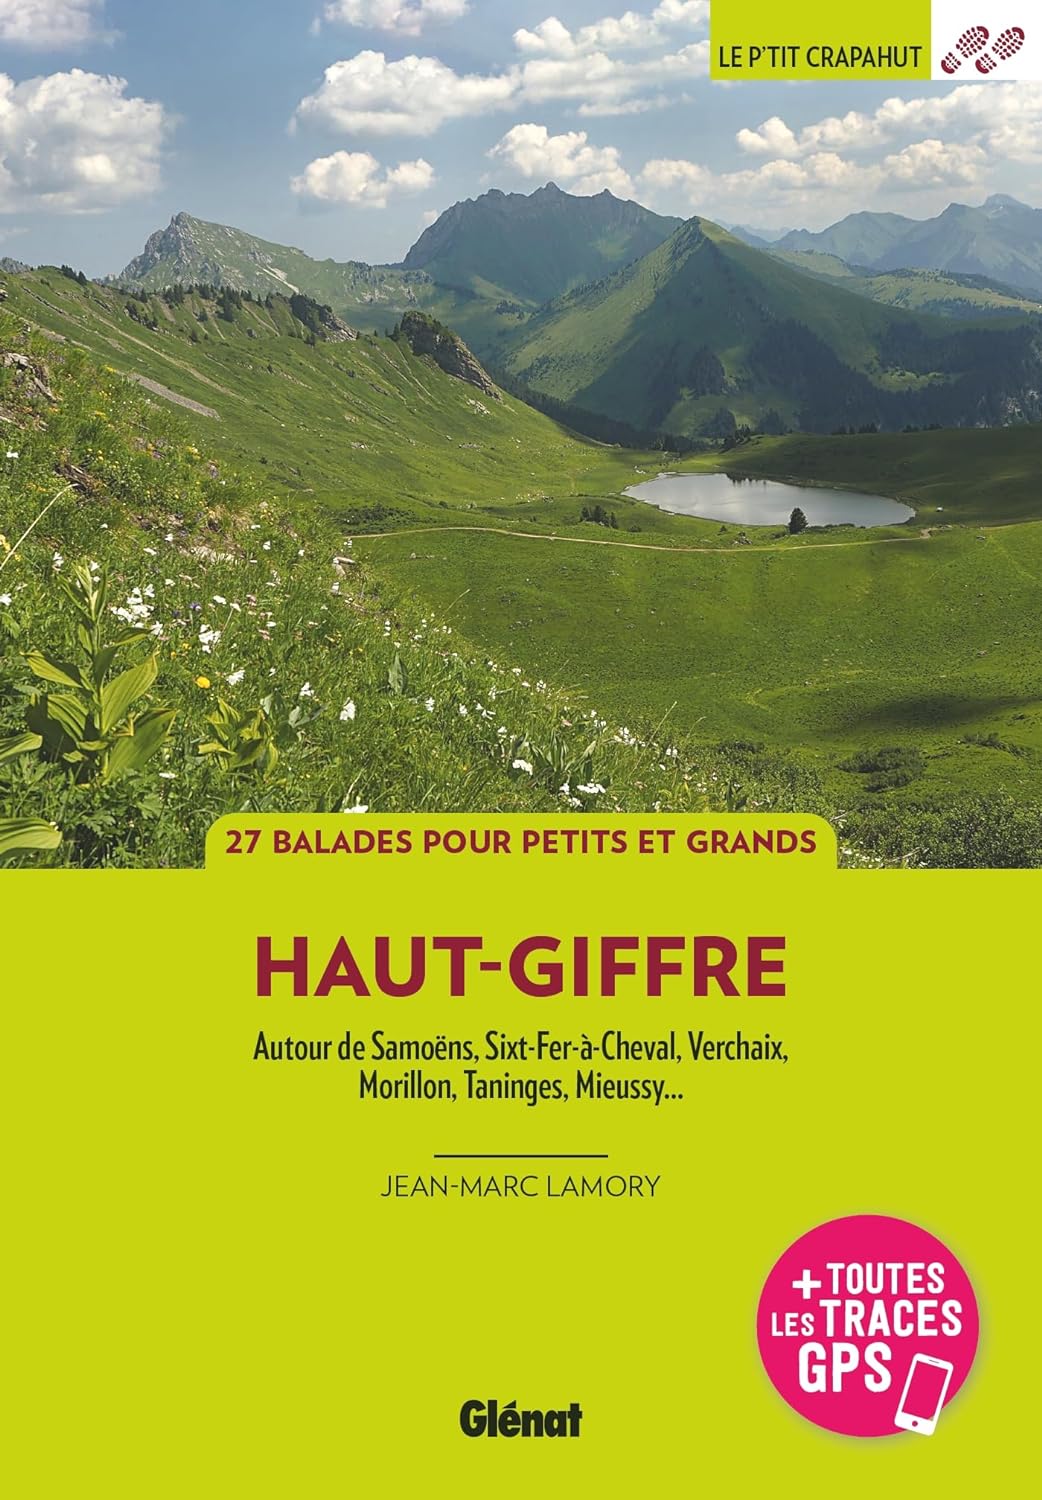 Guide de balades - Haut-Giffre : Autour de Samoëns, Sixt-Fer-à-Cheval, Verchaix, Morillon | Glénat - P'tit Crapahut